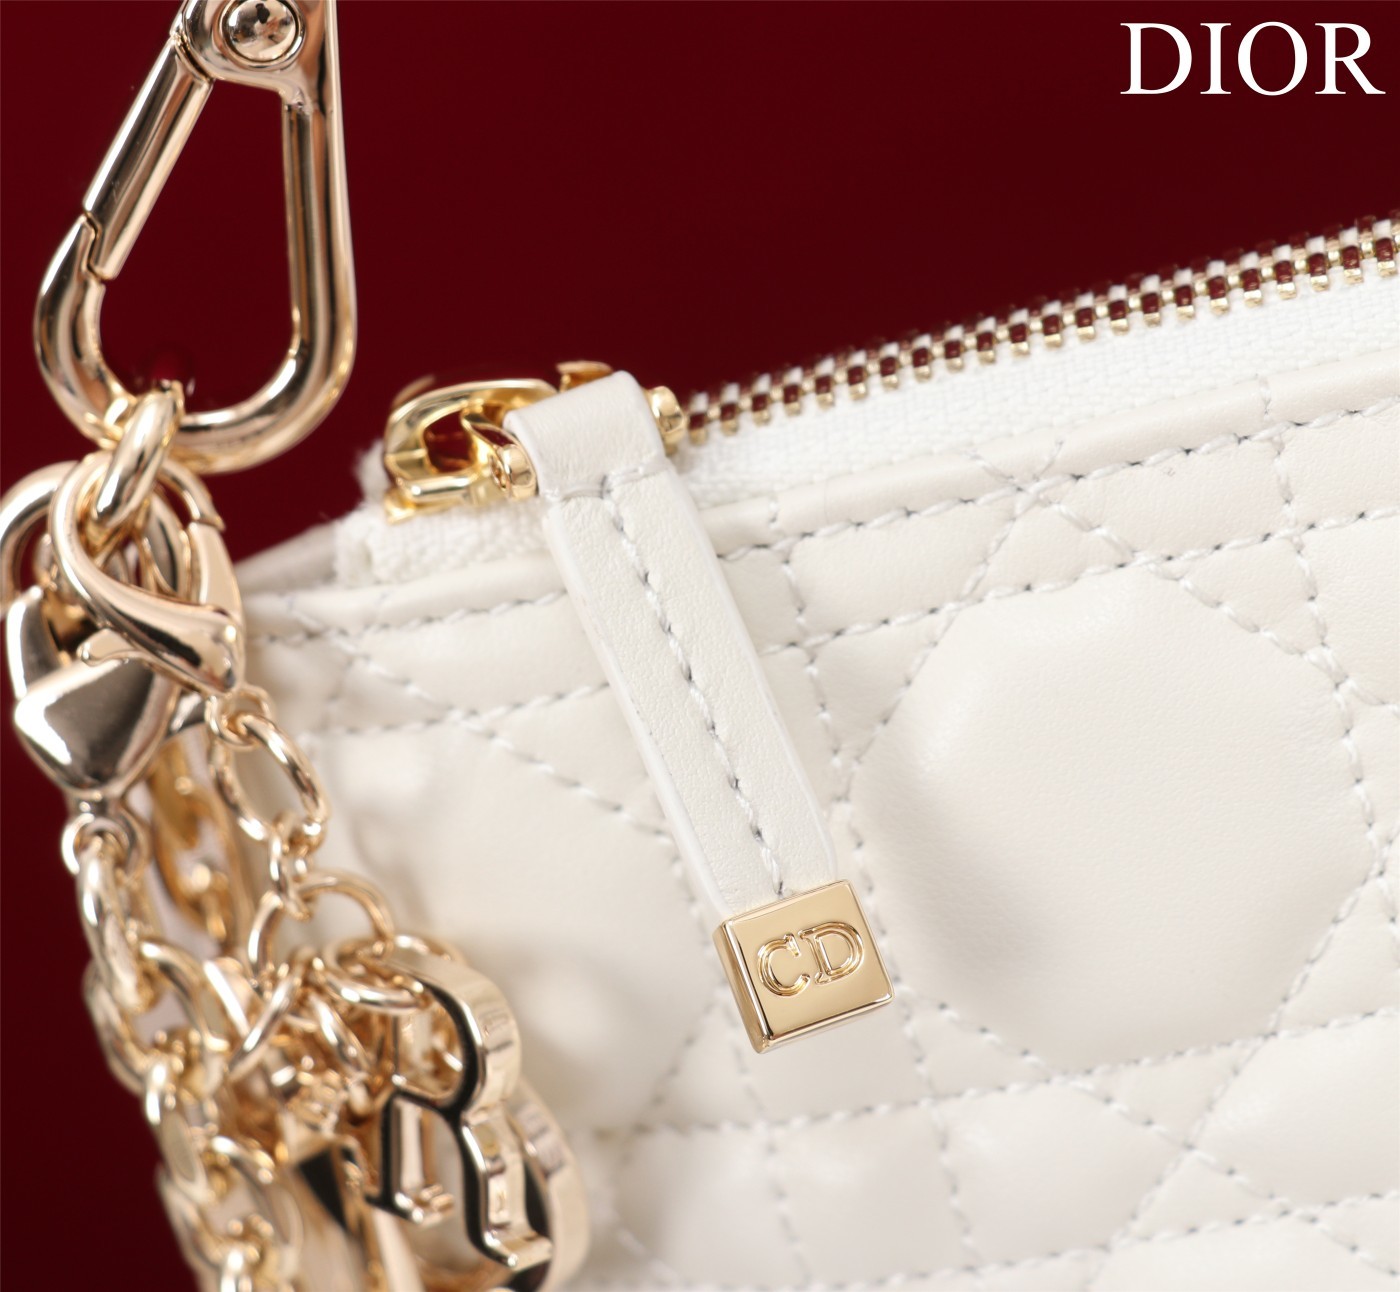 迪奥Dior顶级进口原厂羊皮单肩斜挂包se32x146.5cm